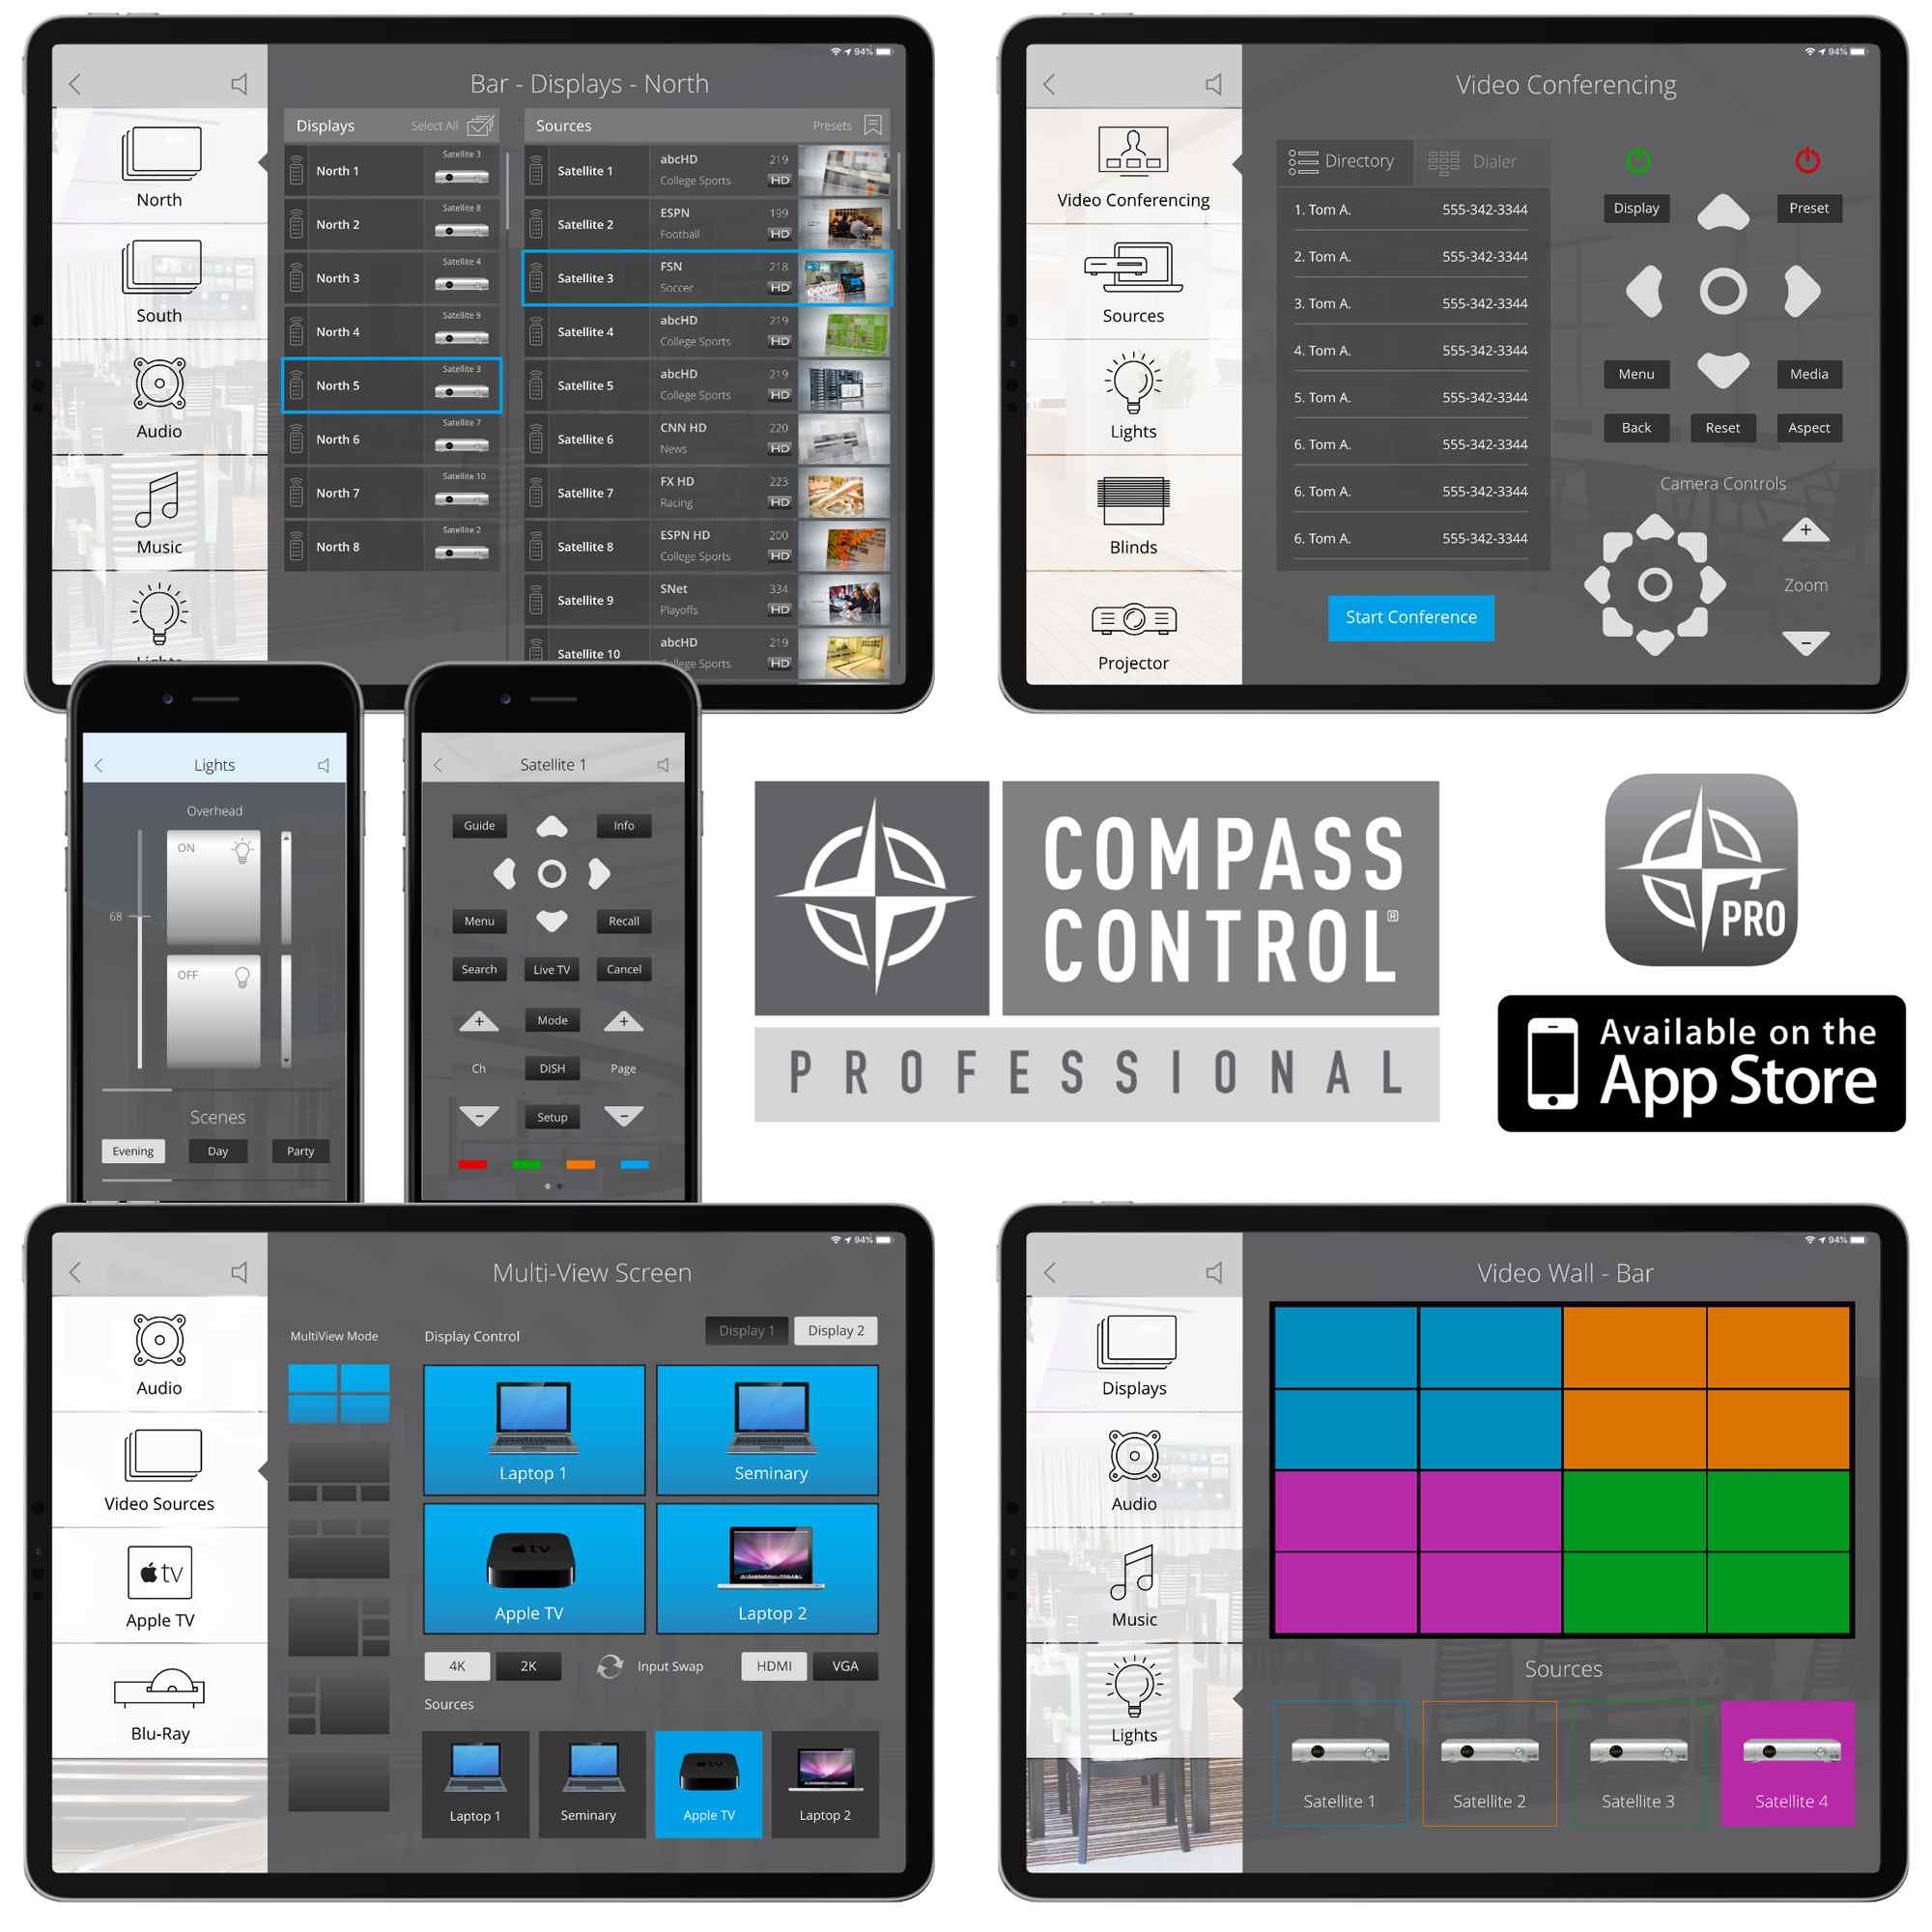 Key Digital CompassControlPro iOS App Product